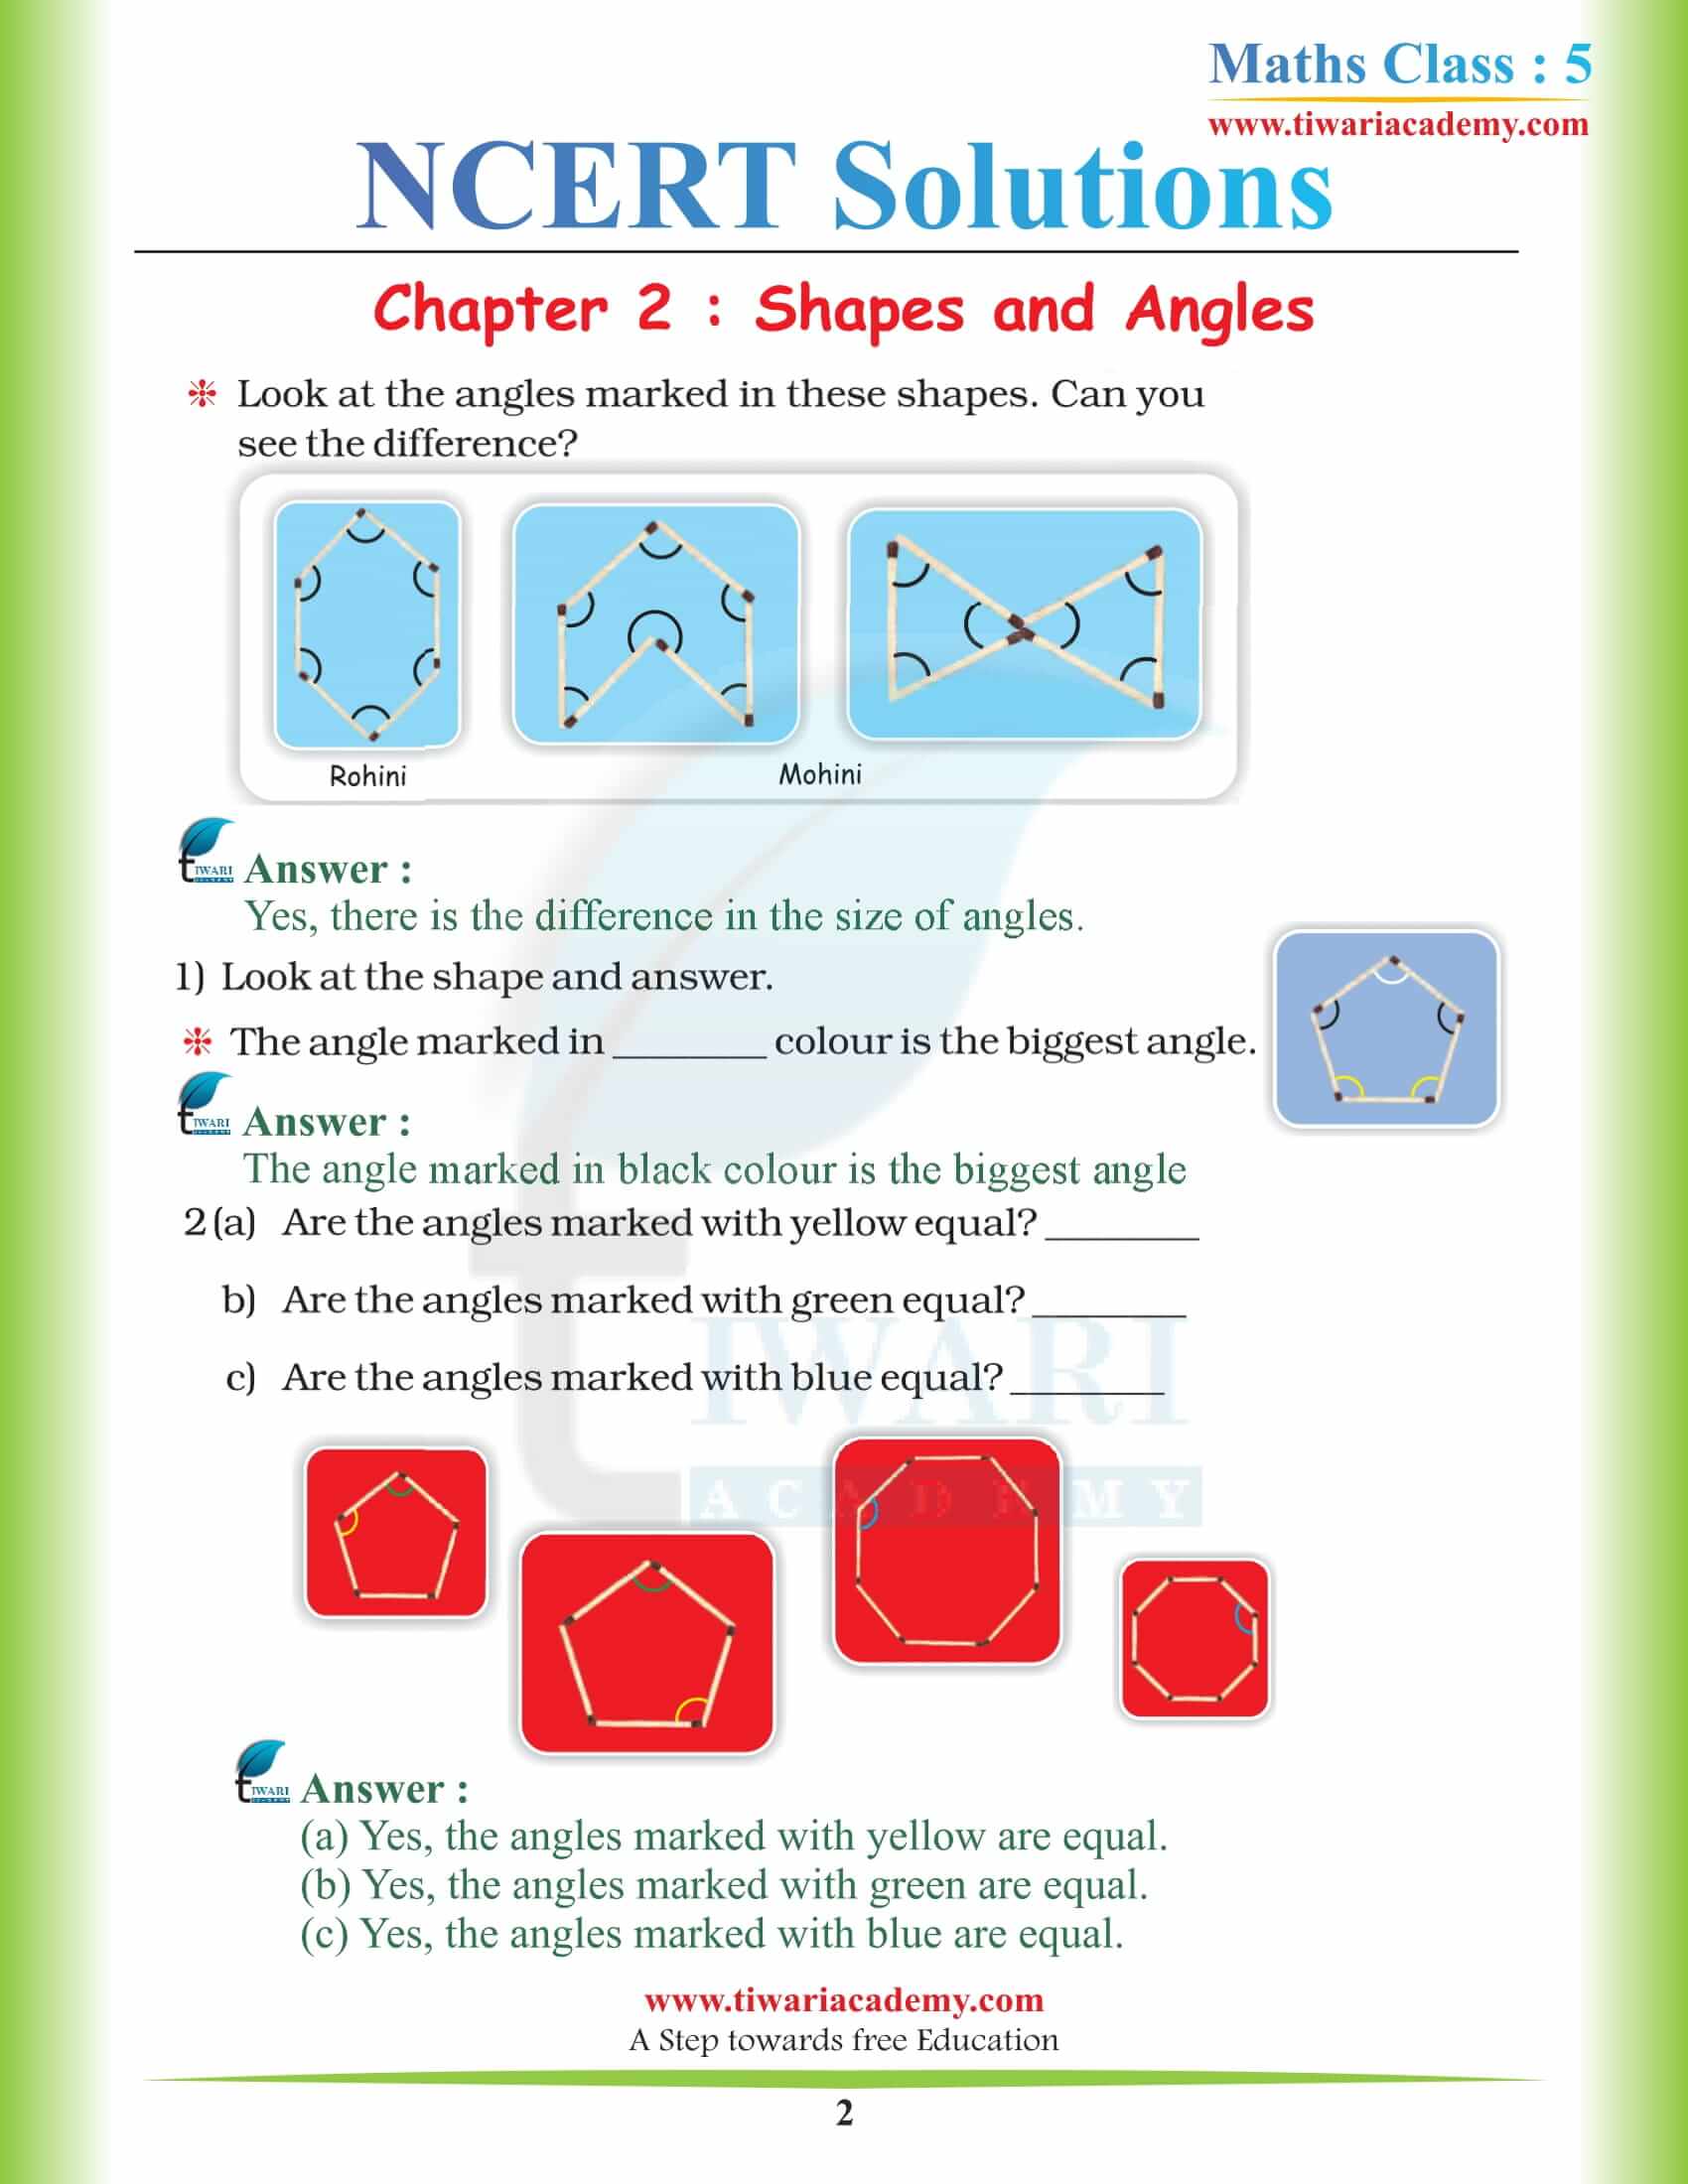 NCERT Solutions for Class 5 Maths Chapter 2